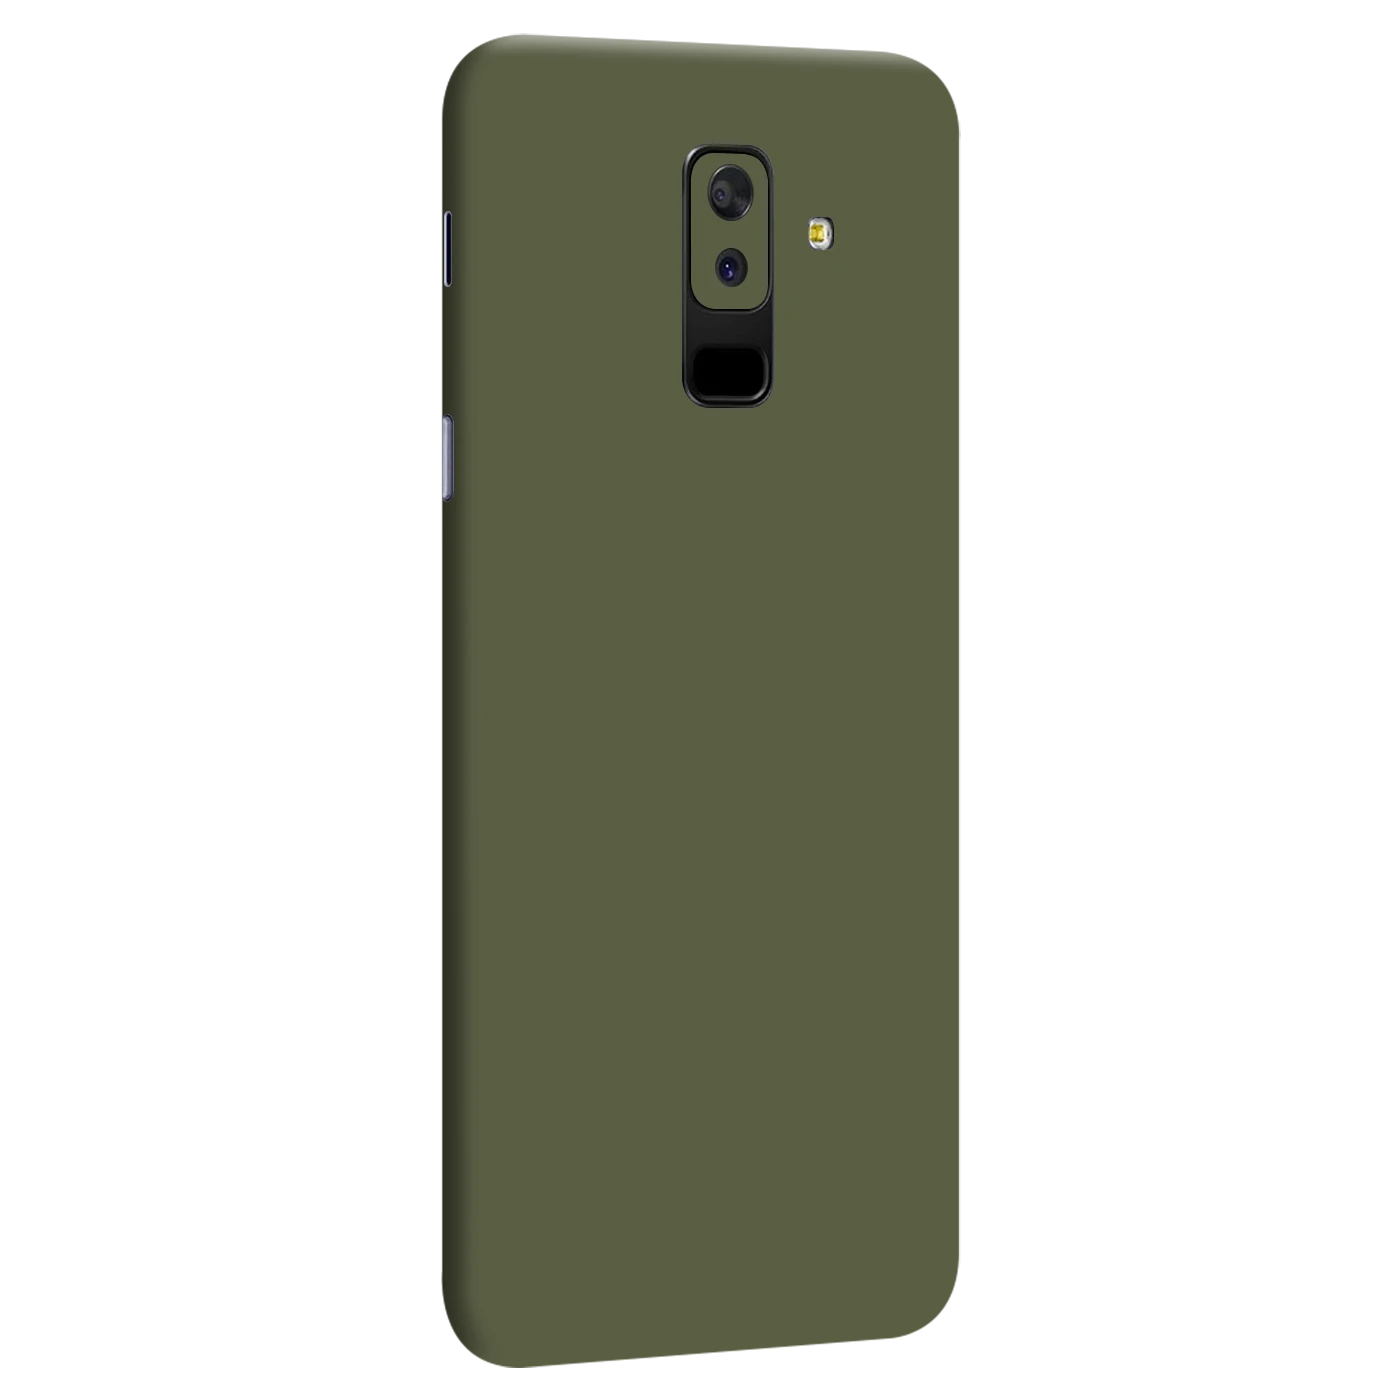 Samsung Galaxy A6 Plus 2018 Kaplama - Haki Yeşil